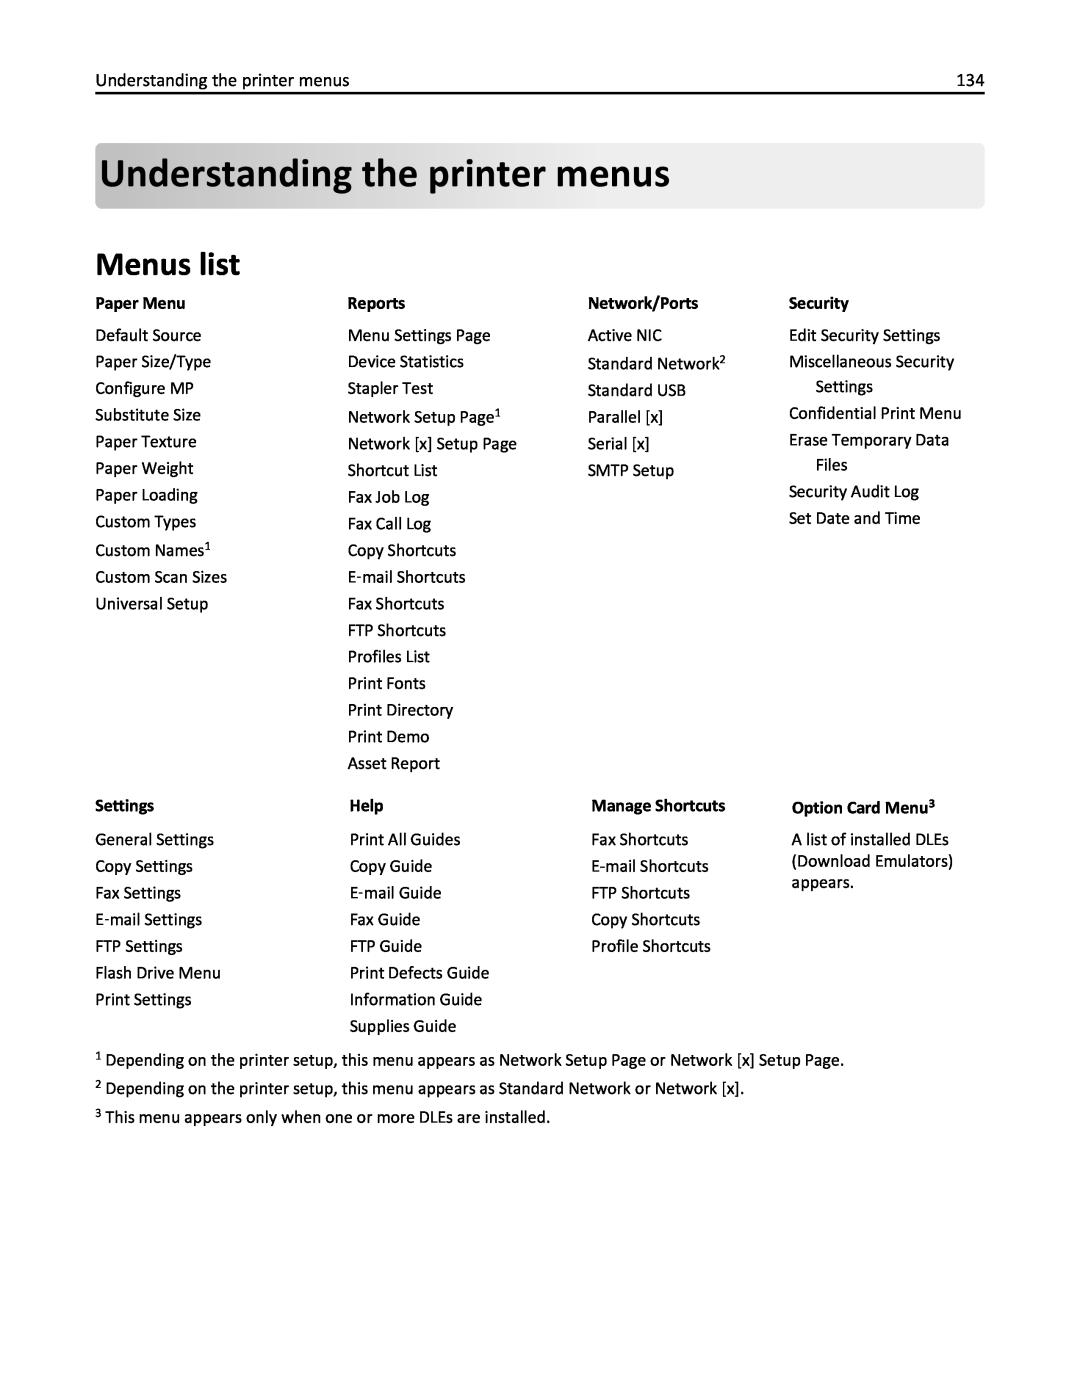 Lexmark 35S5701 Understandingthe printer menus, Menus list, Paper Menu, ReportsNetwork/Ports, Security, Settings, Help 